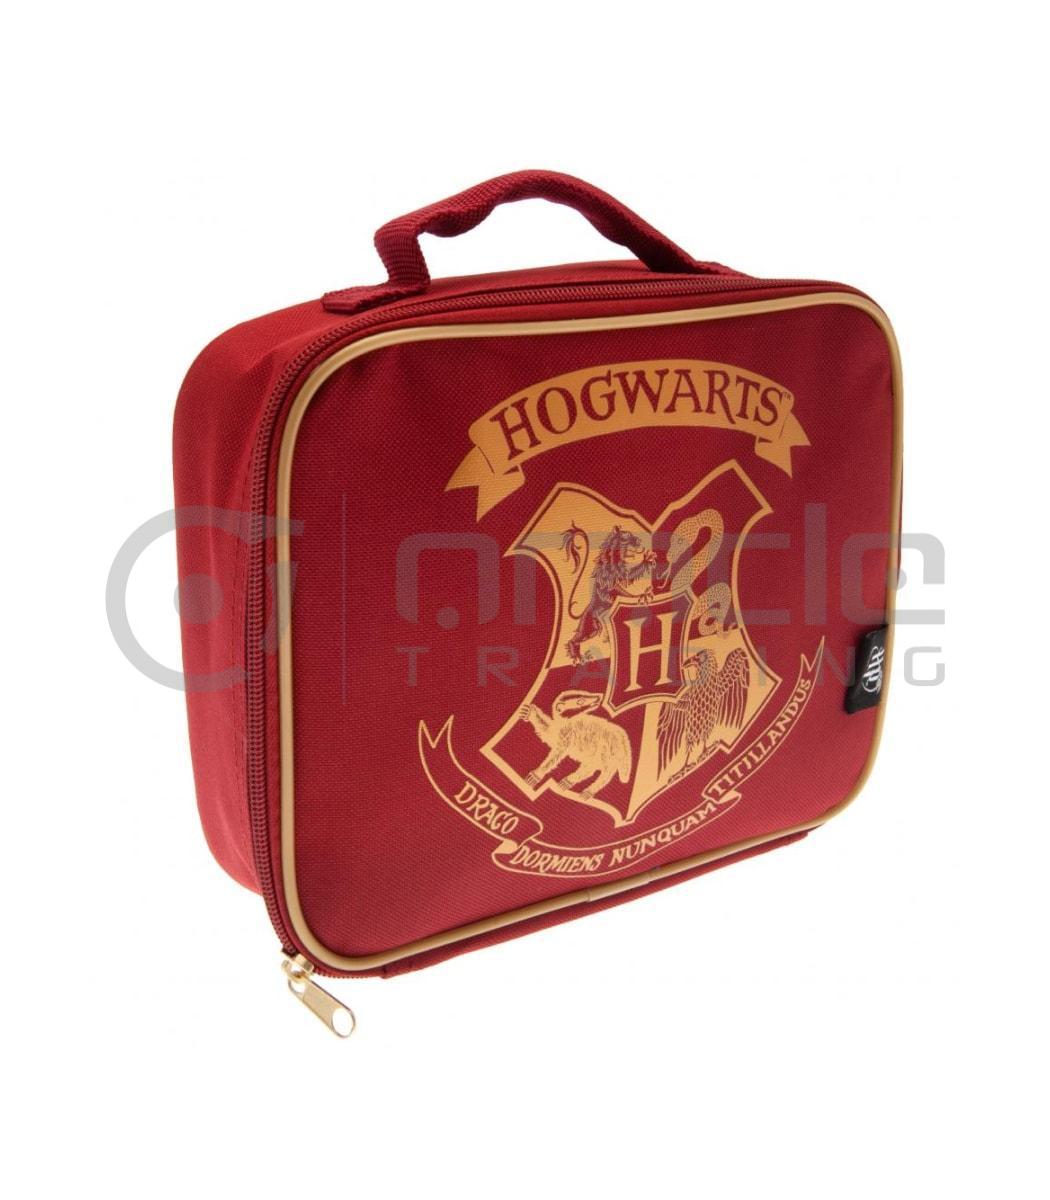 Harry Potter Lunch Bag - Hogwarts (Red)